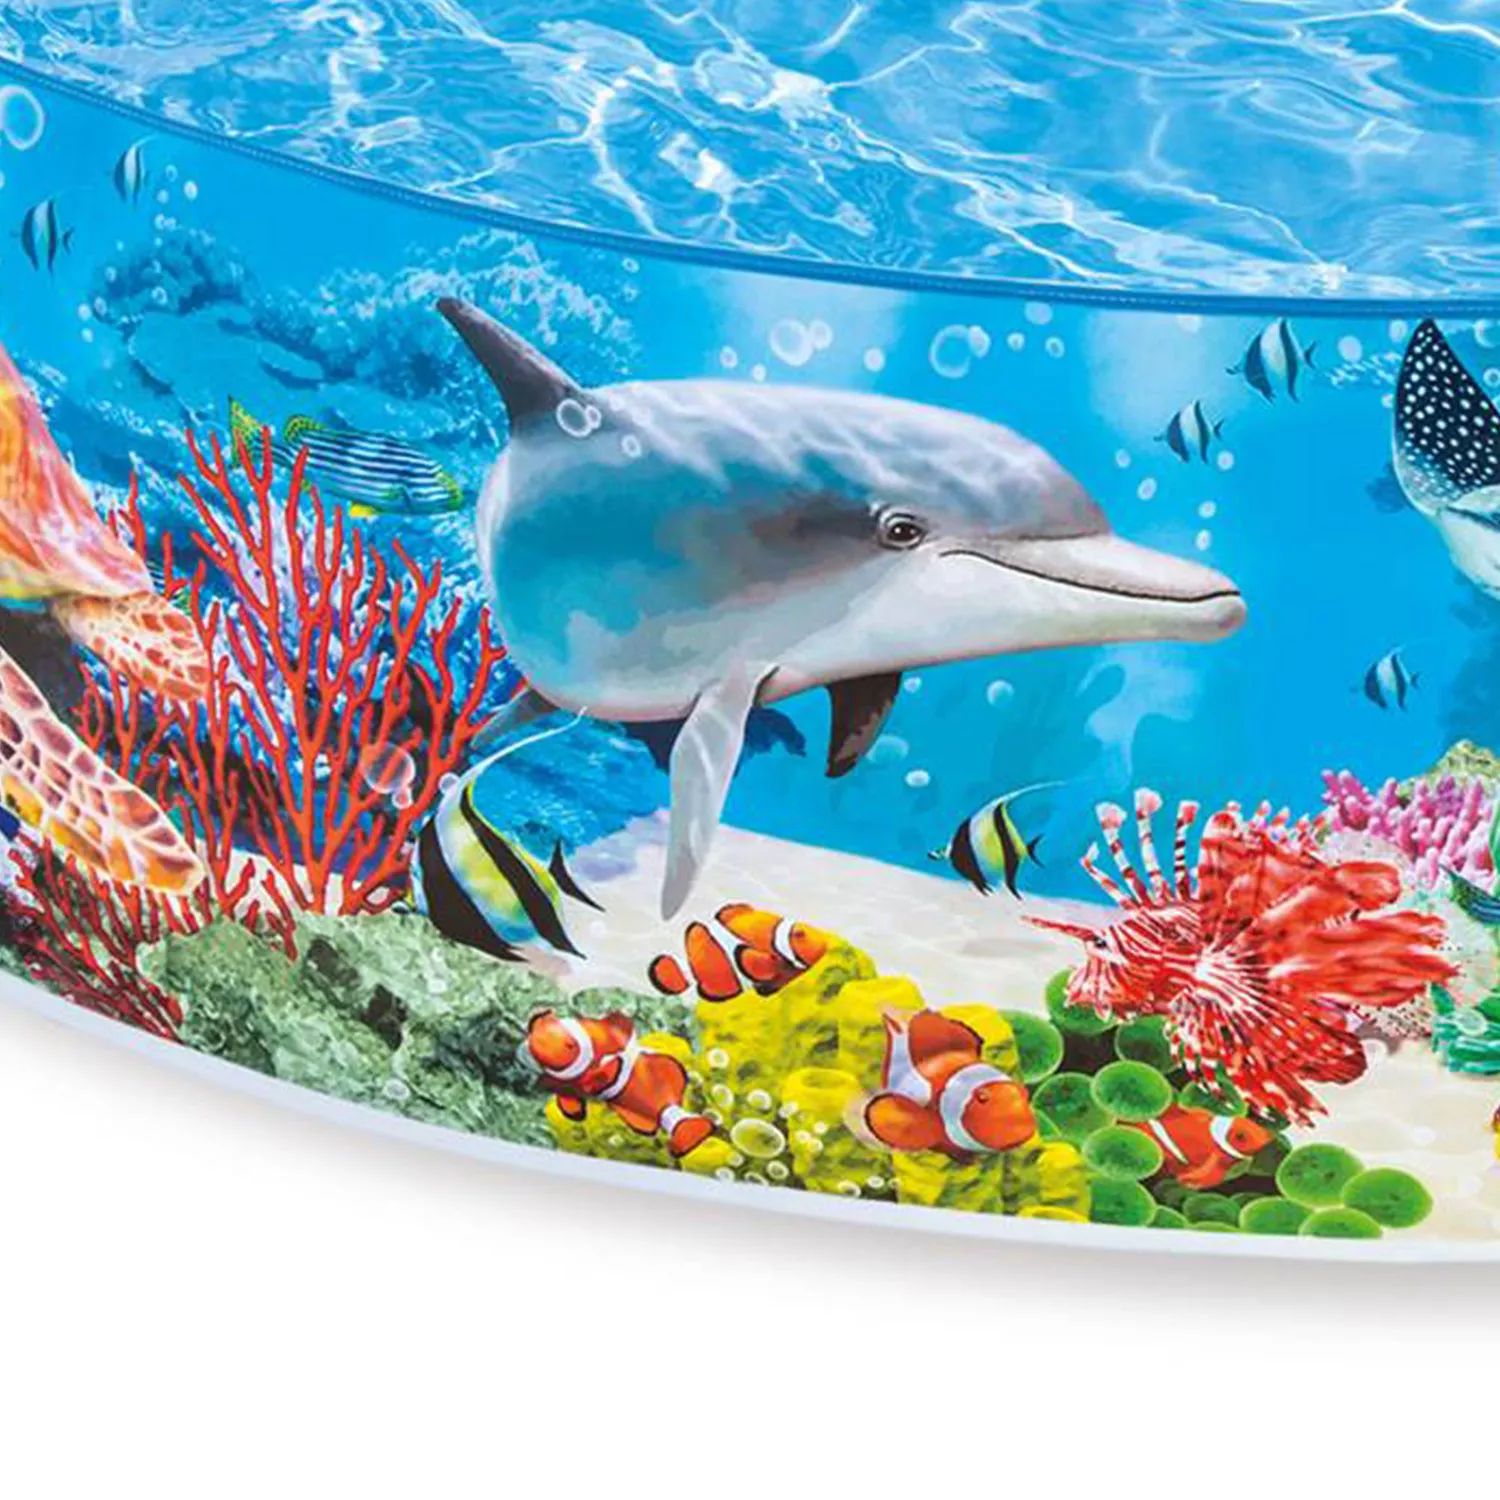 Intex Deep Sea Blue SnapSet Instant Надземный плавательный детский бассейн размером 8 футов x 18 дюймов Intex